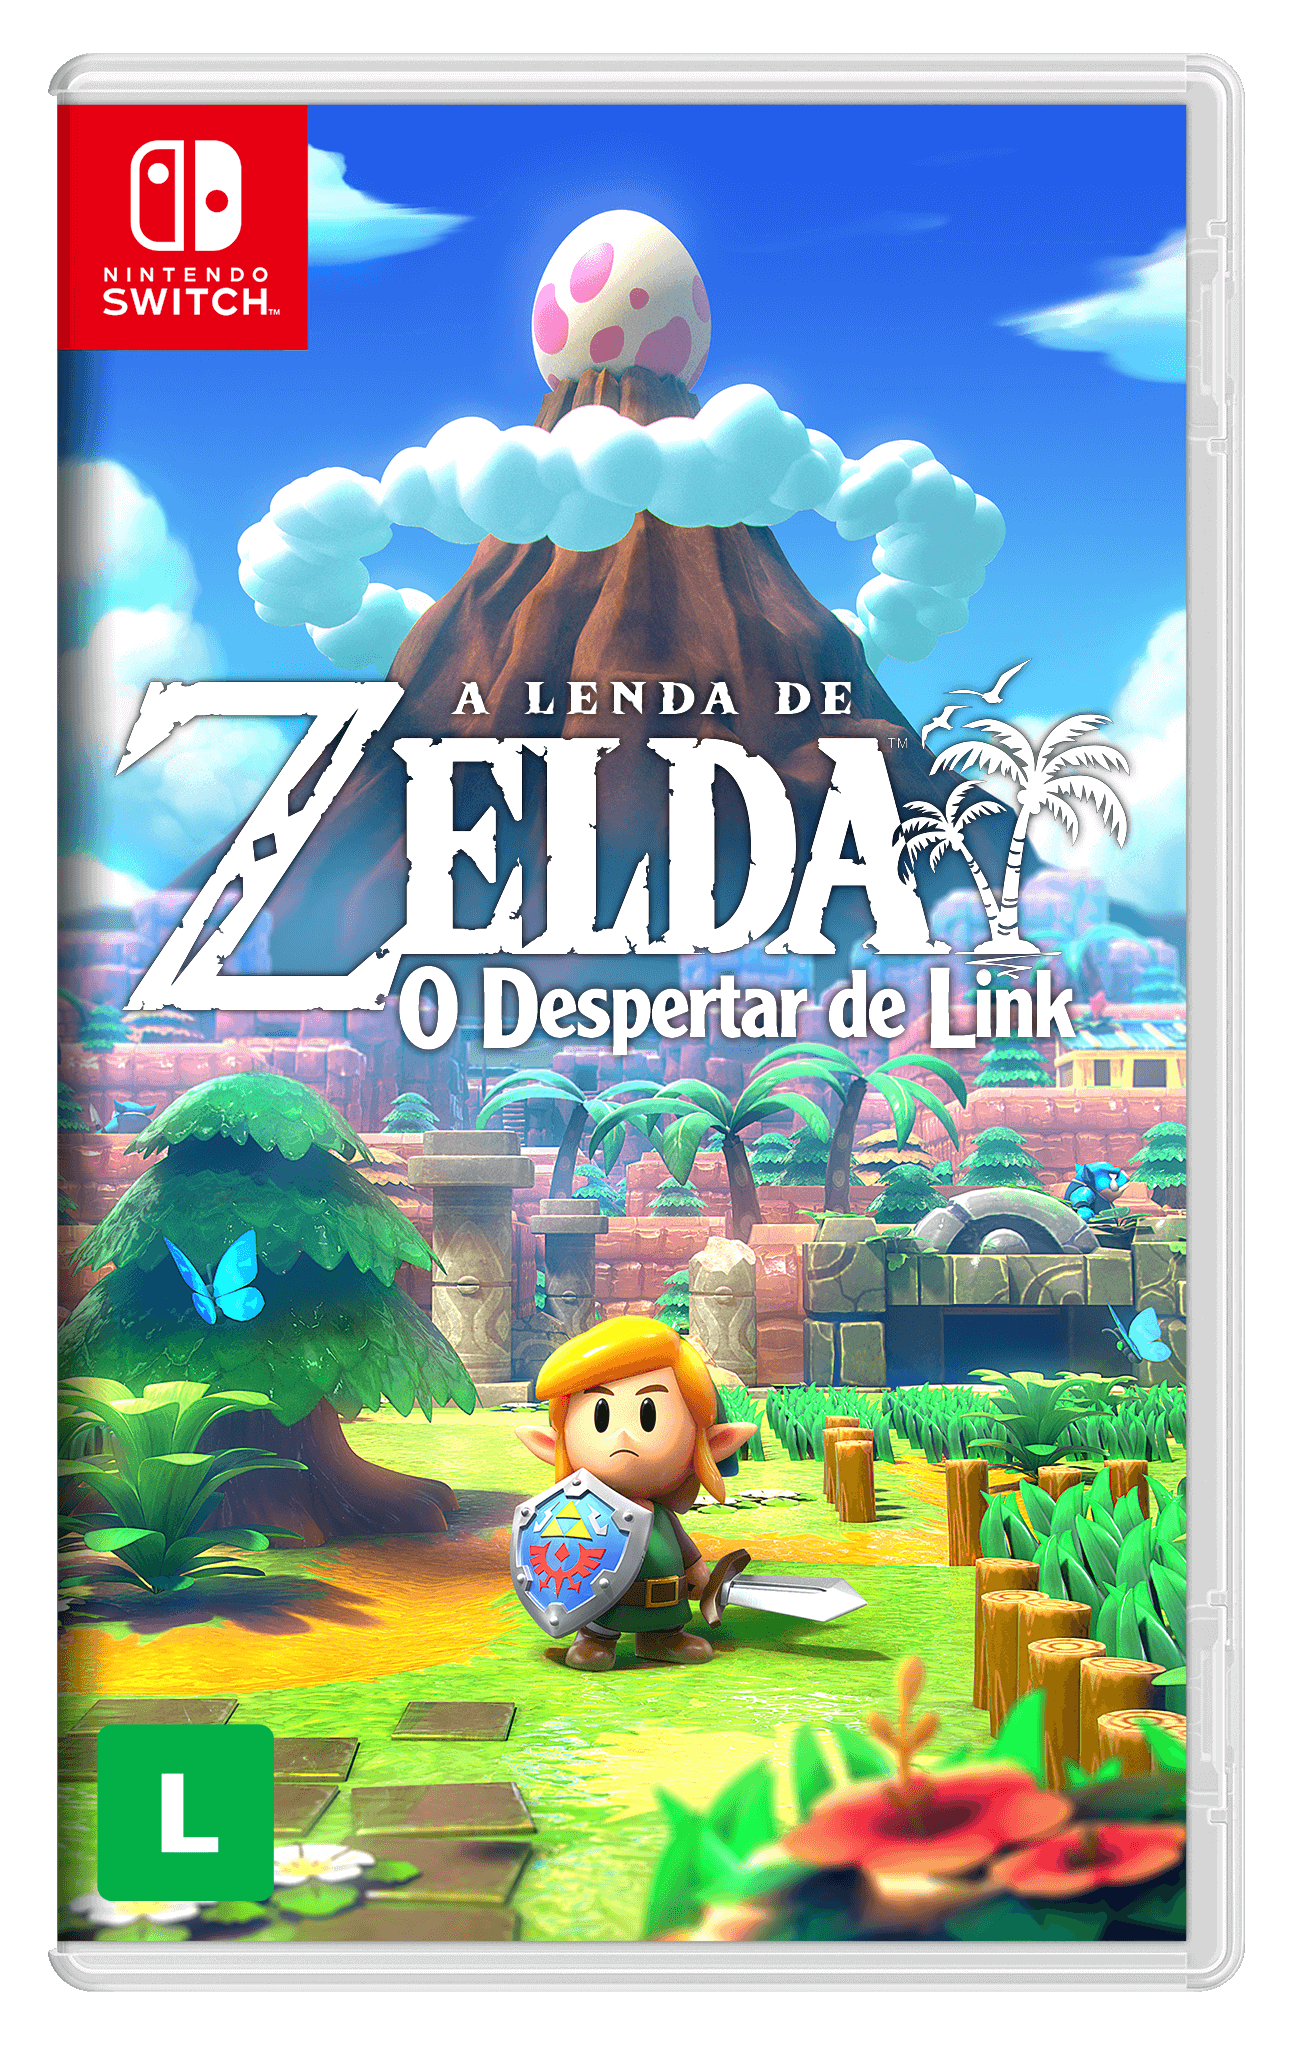 A Lenda de Zelda: O Despertar de Link - Elite dos Quatro Traduções